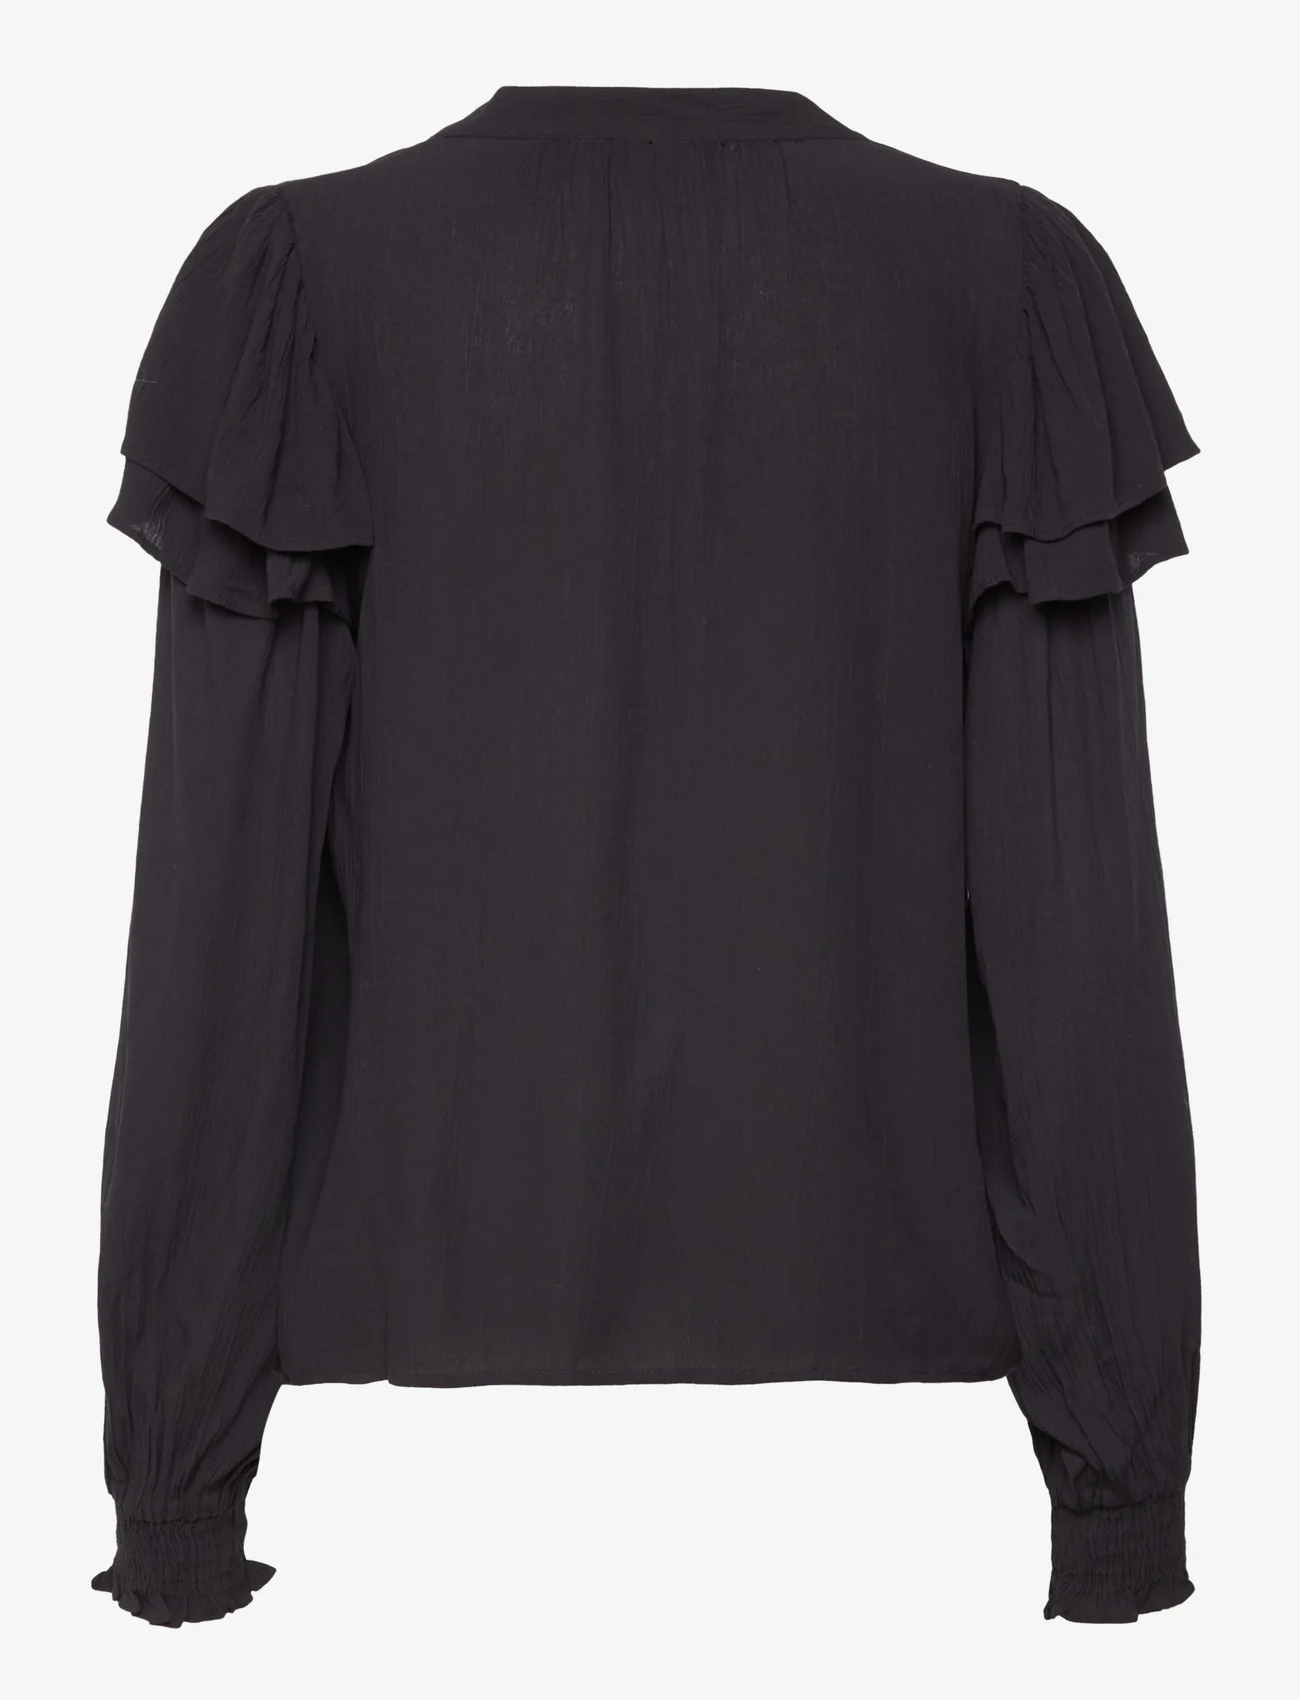 Vila - VITHEO L/S FLOUNCE TOP - long-sleeved blouses - black beauty - 1